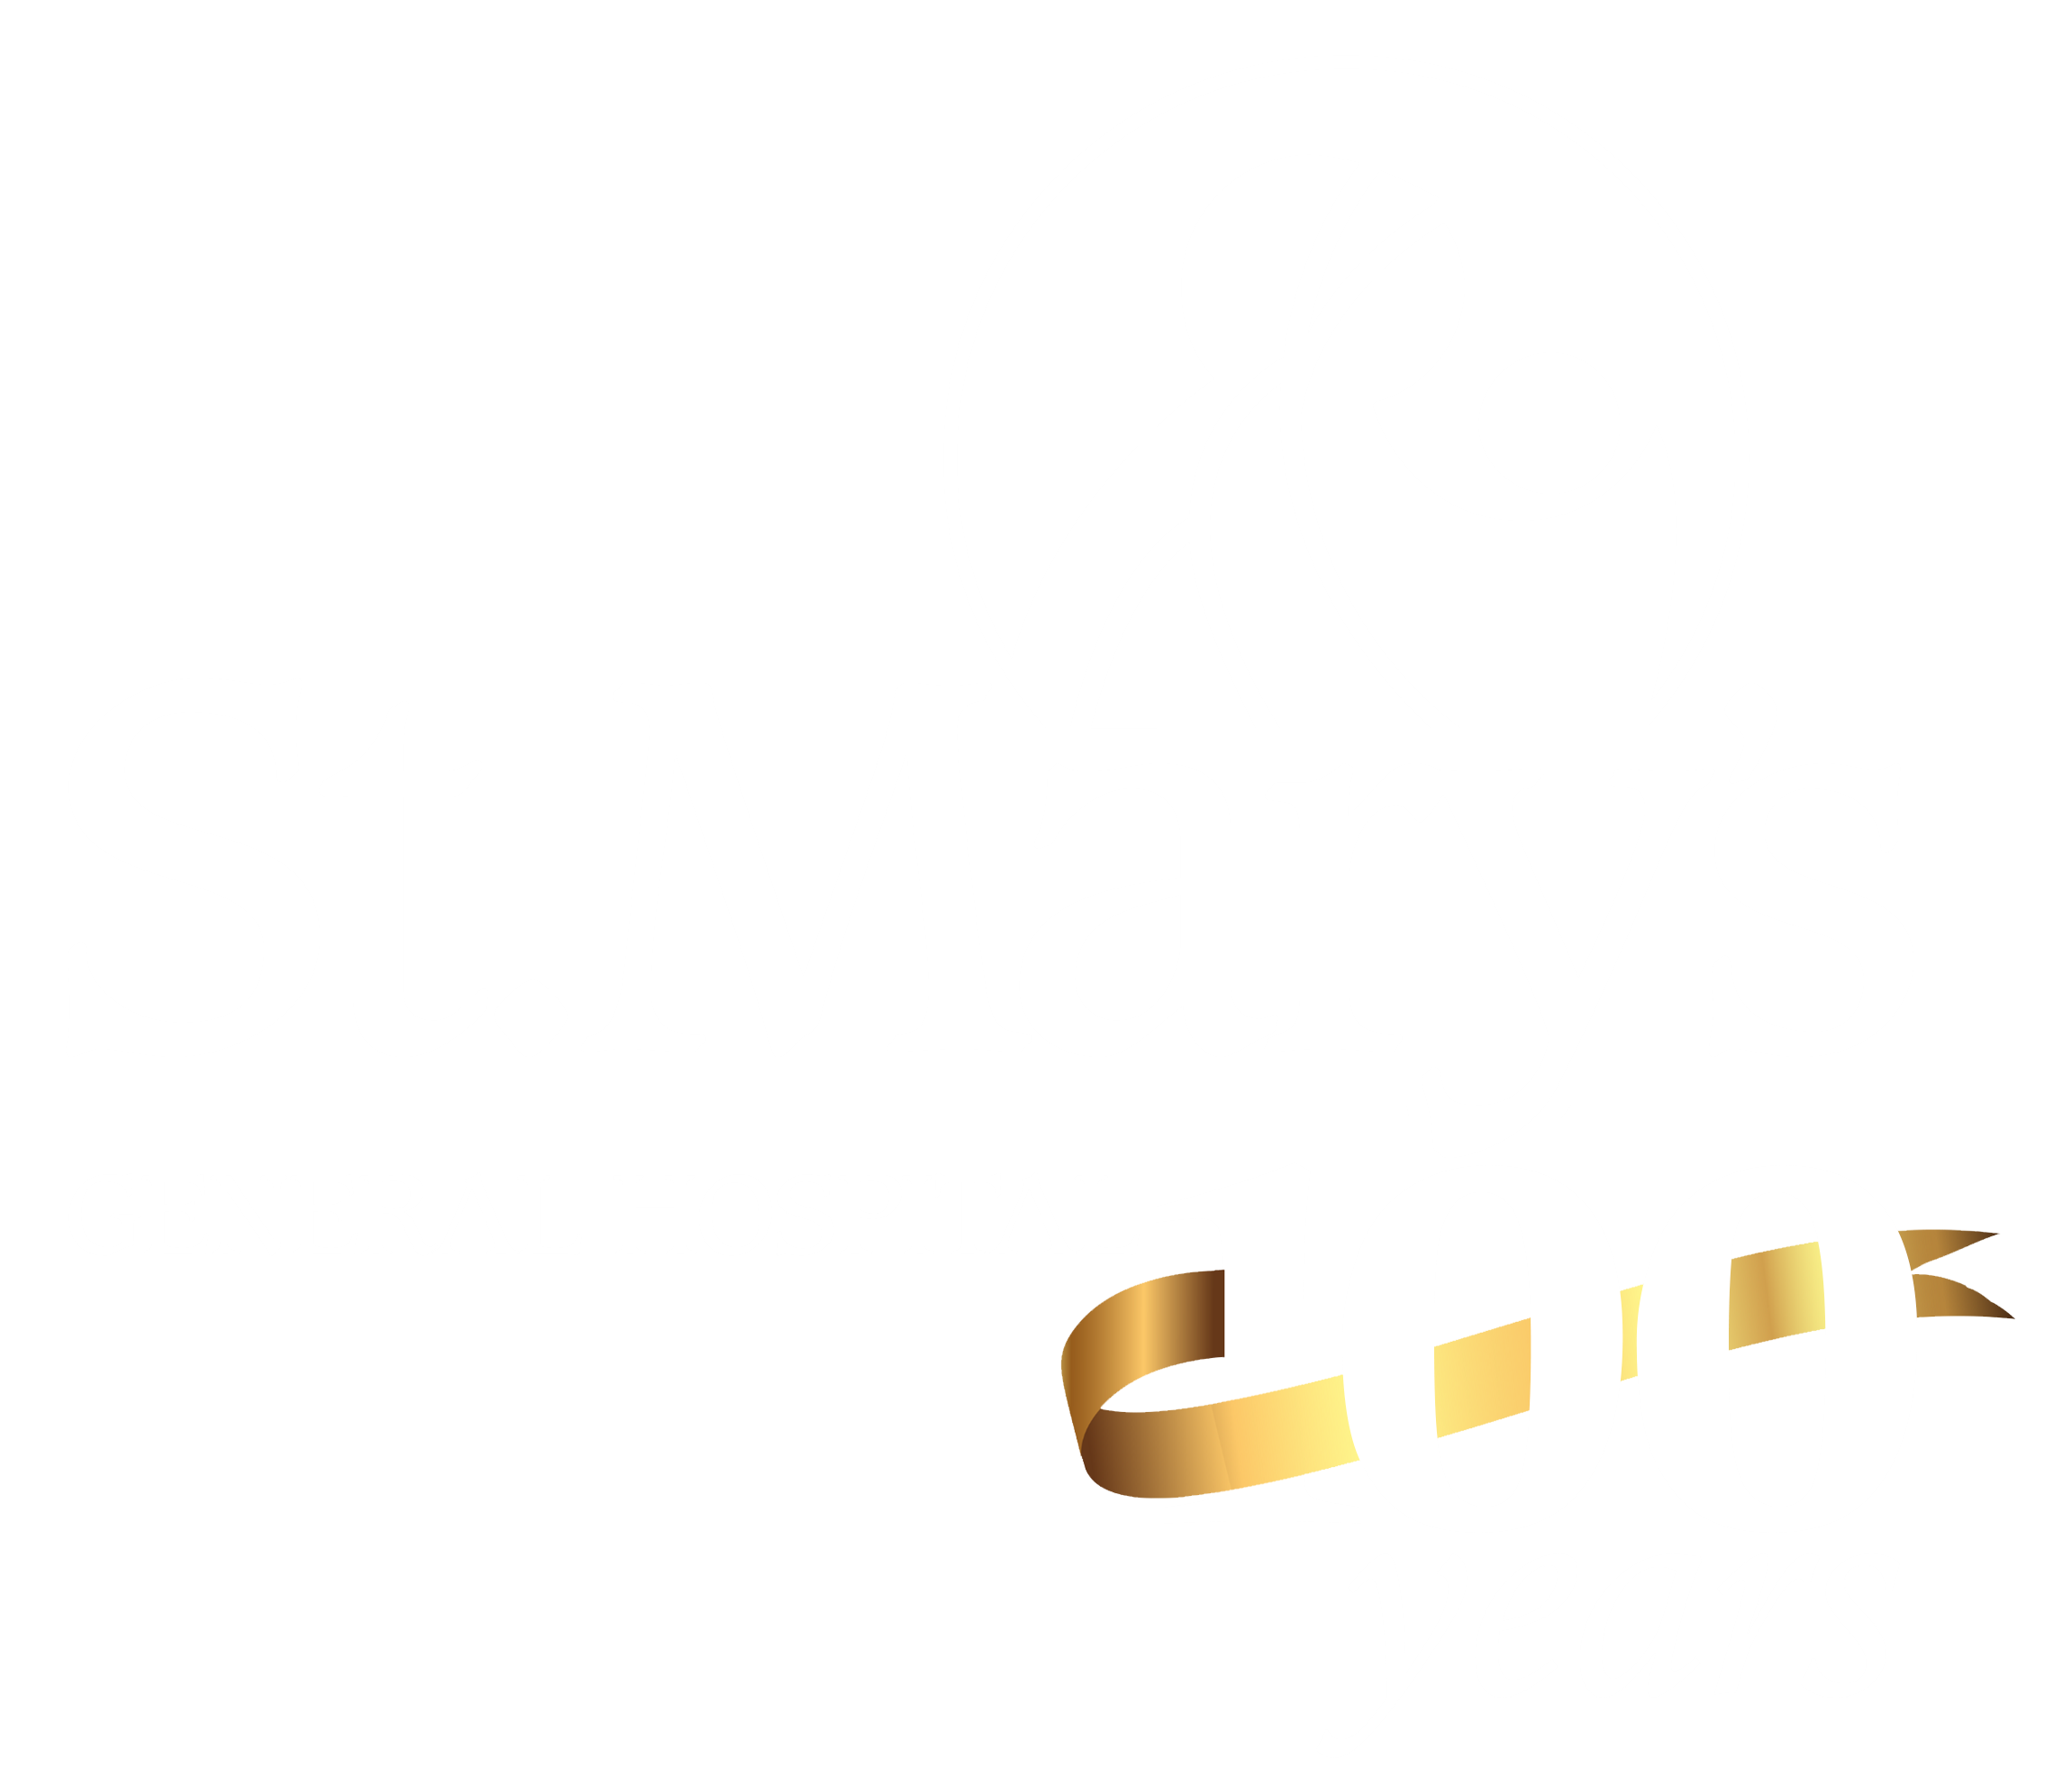 St. Mary's General Hospital logo